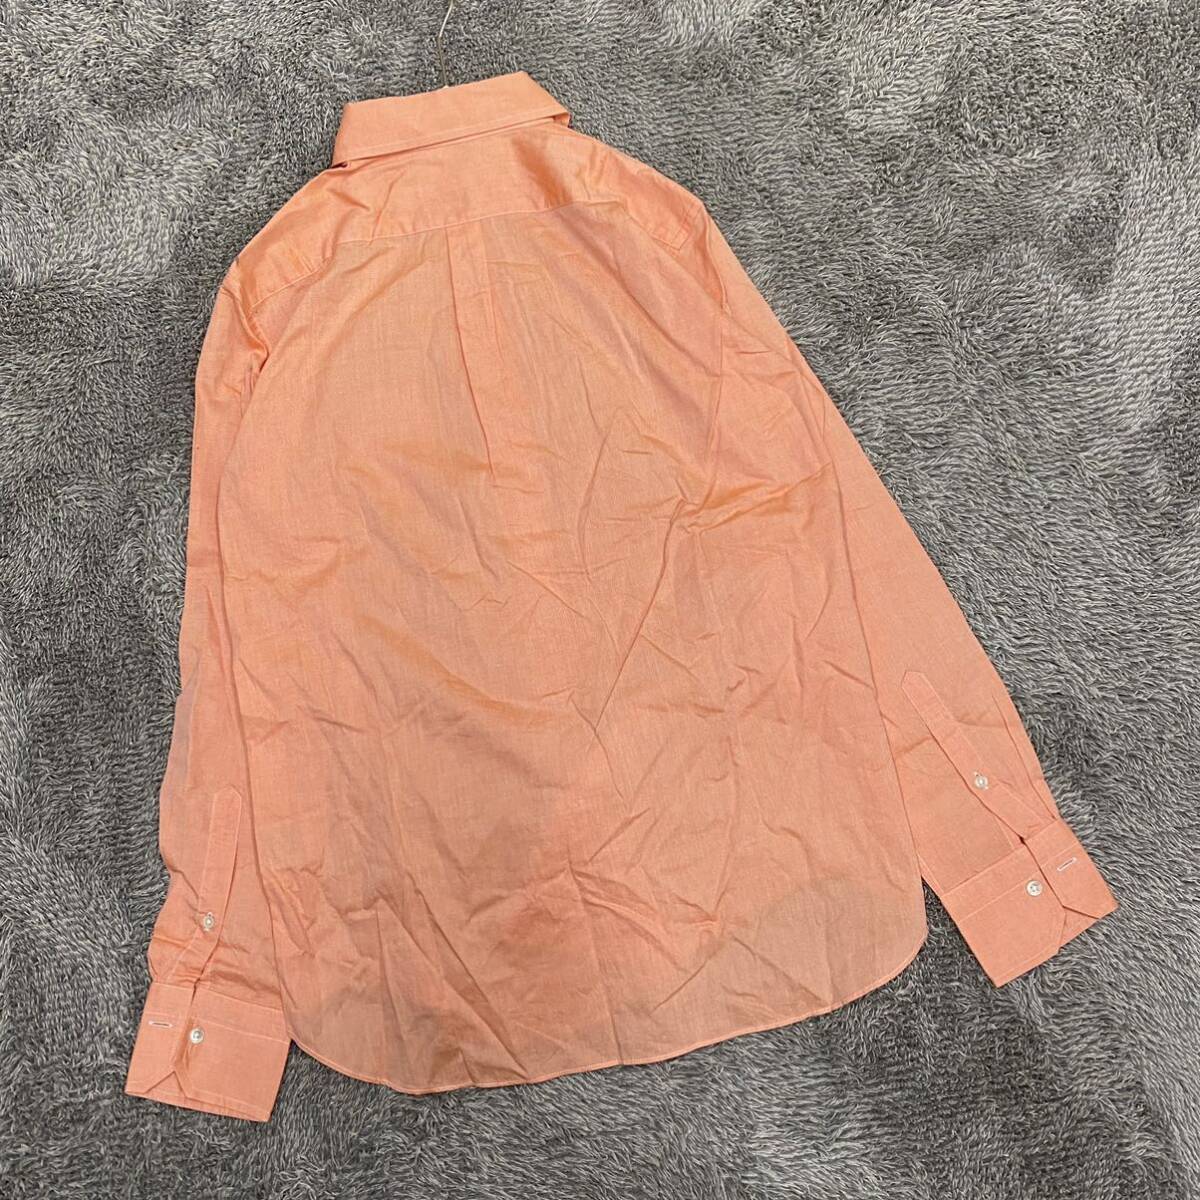 Maker's Shirt鎌倉 鎌倉シャツ 長袖シャツ サイズ11 オレンジ レディース トップス 最落なし （F18）_画像2